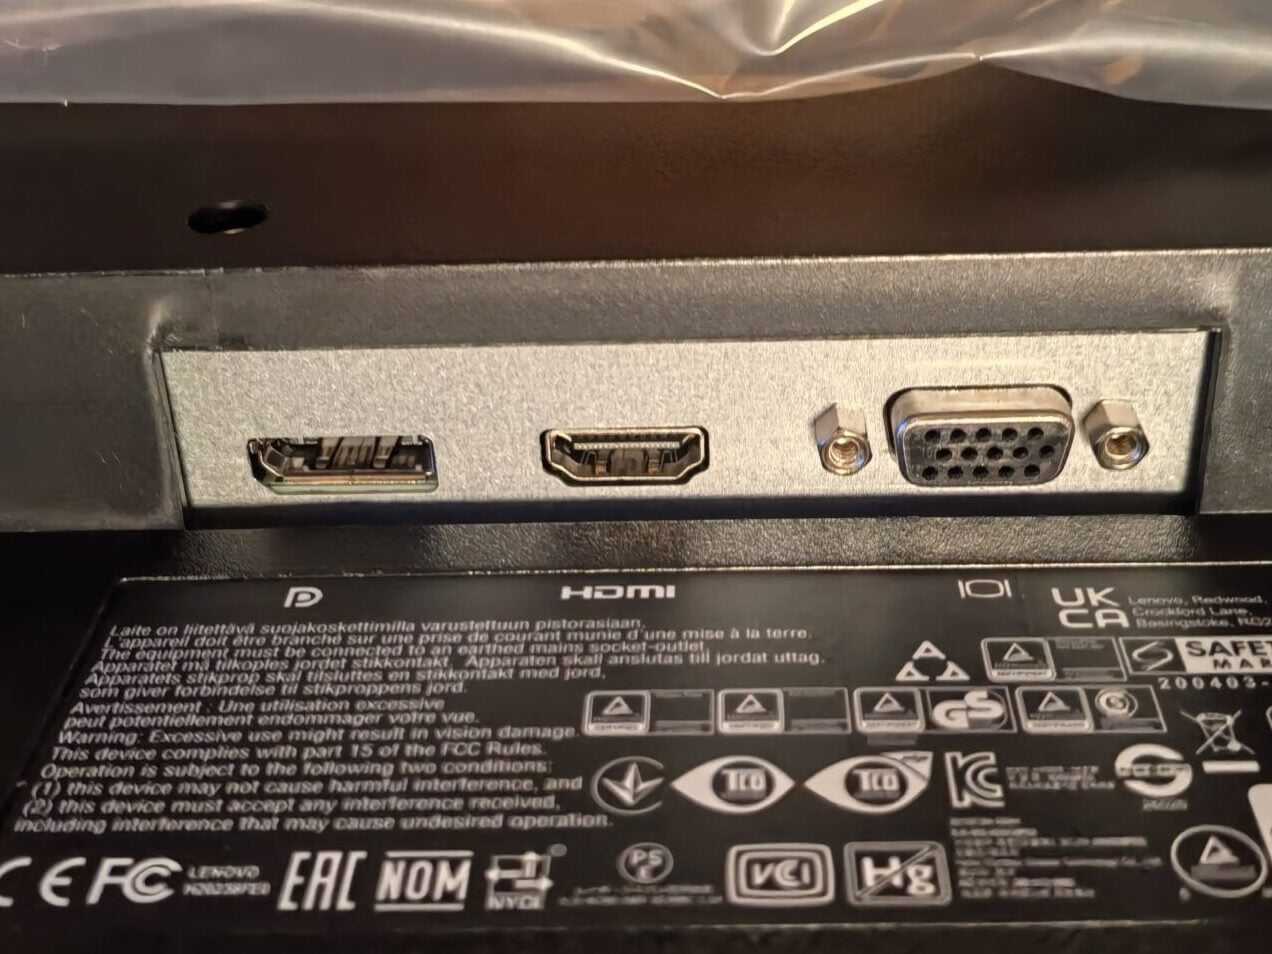 モニターの端子類の紹介
DP,HDMI,D-subがあります